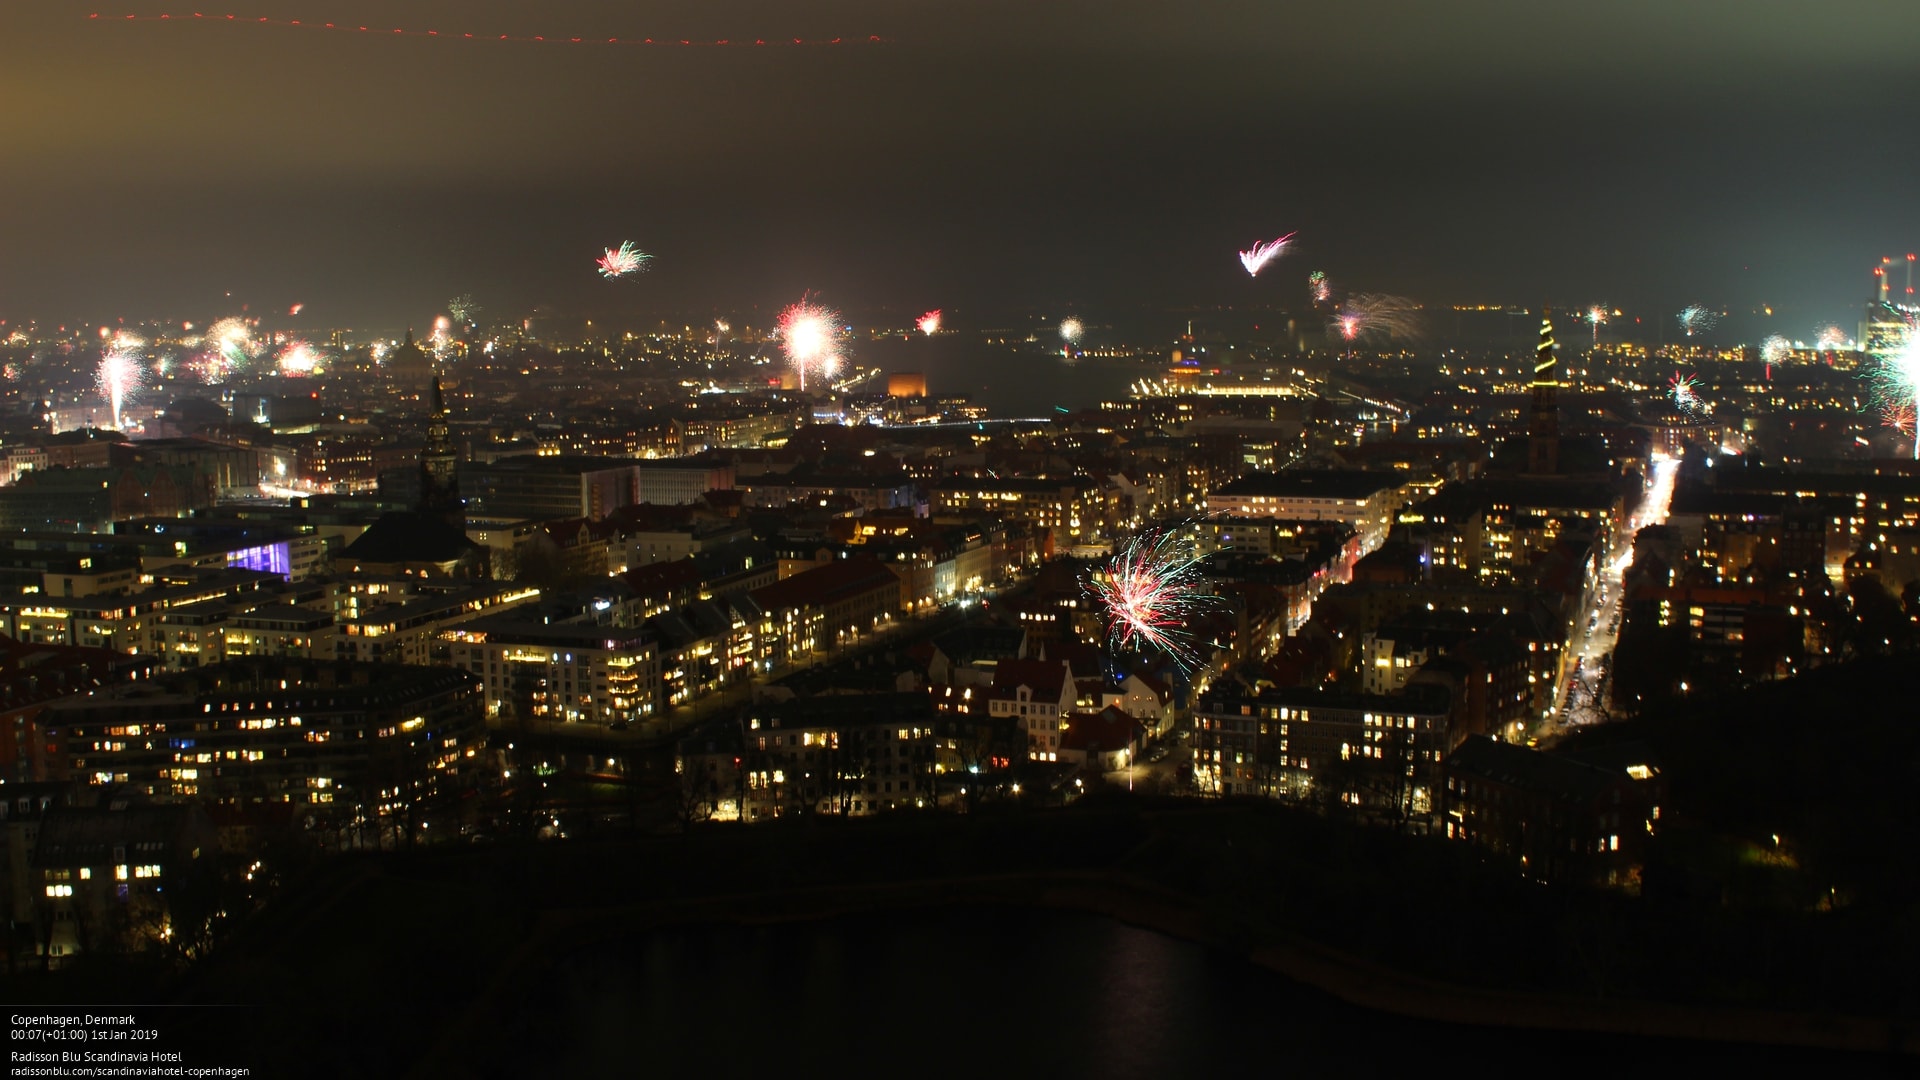 New Year's celebration in Copenhagen Deckchair